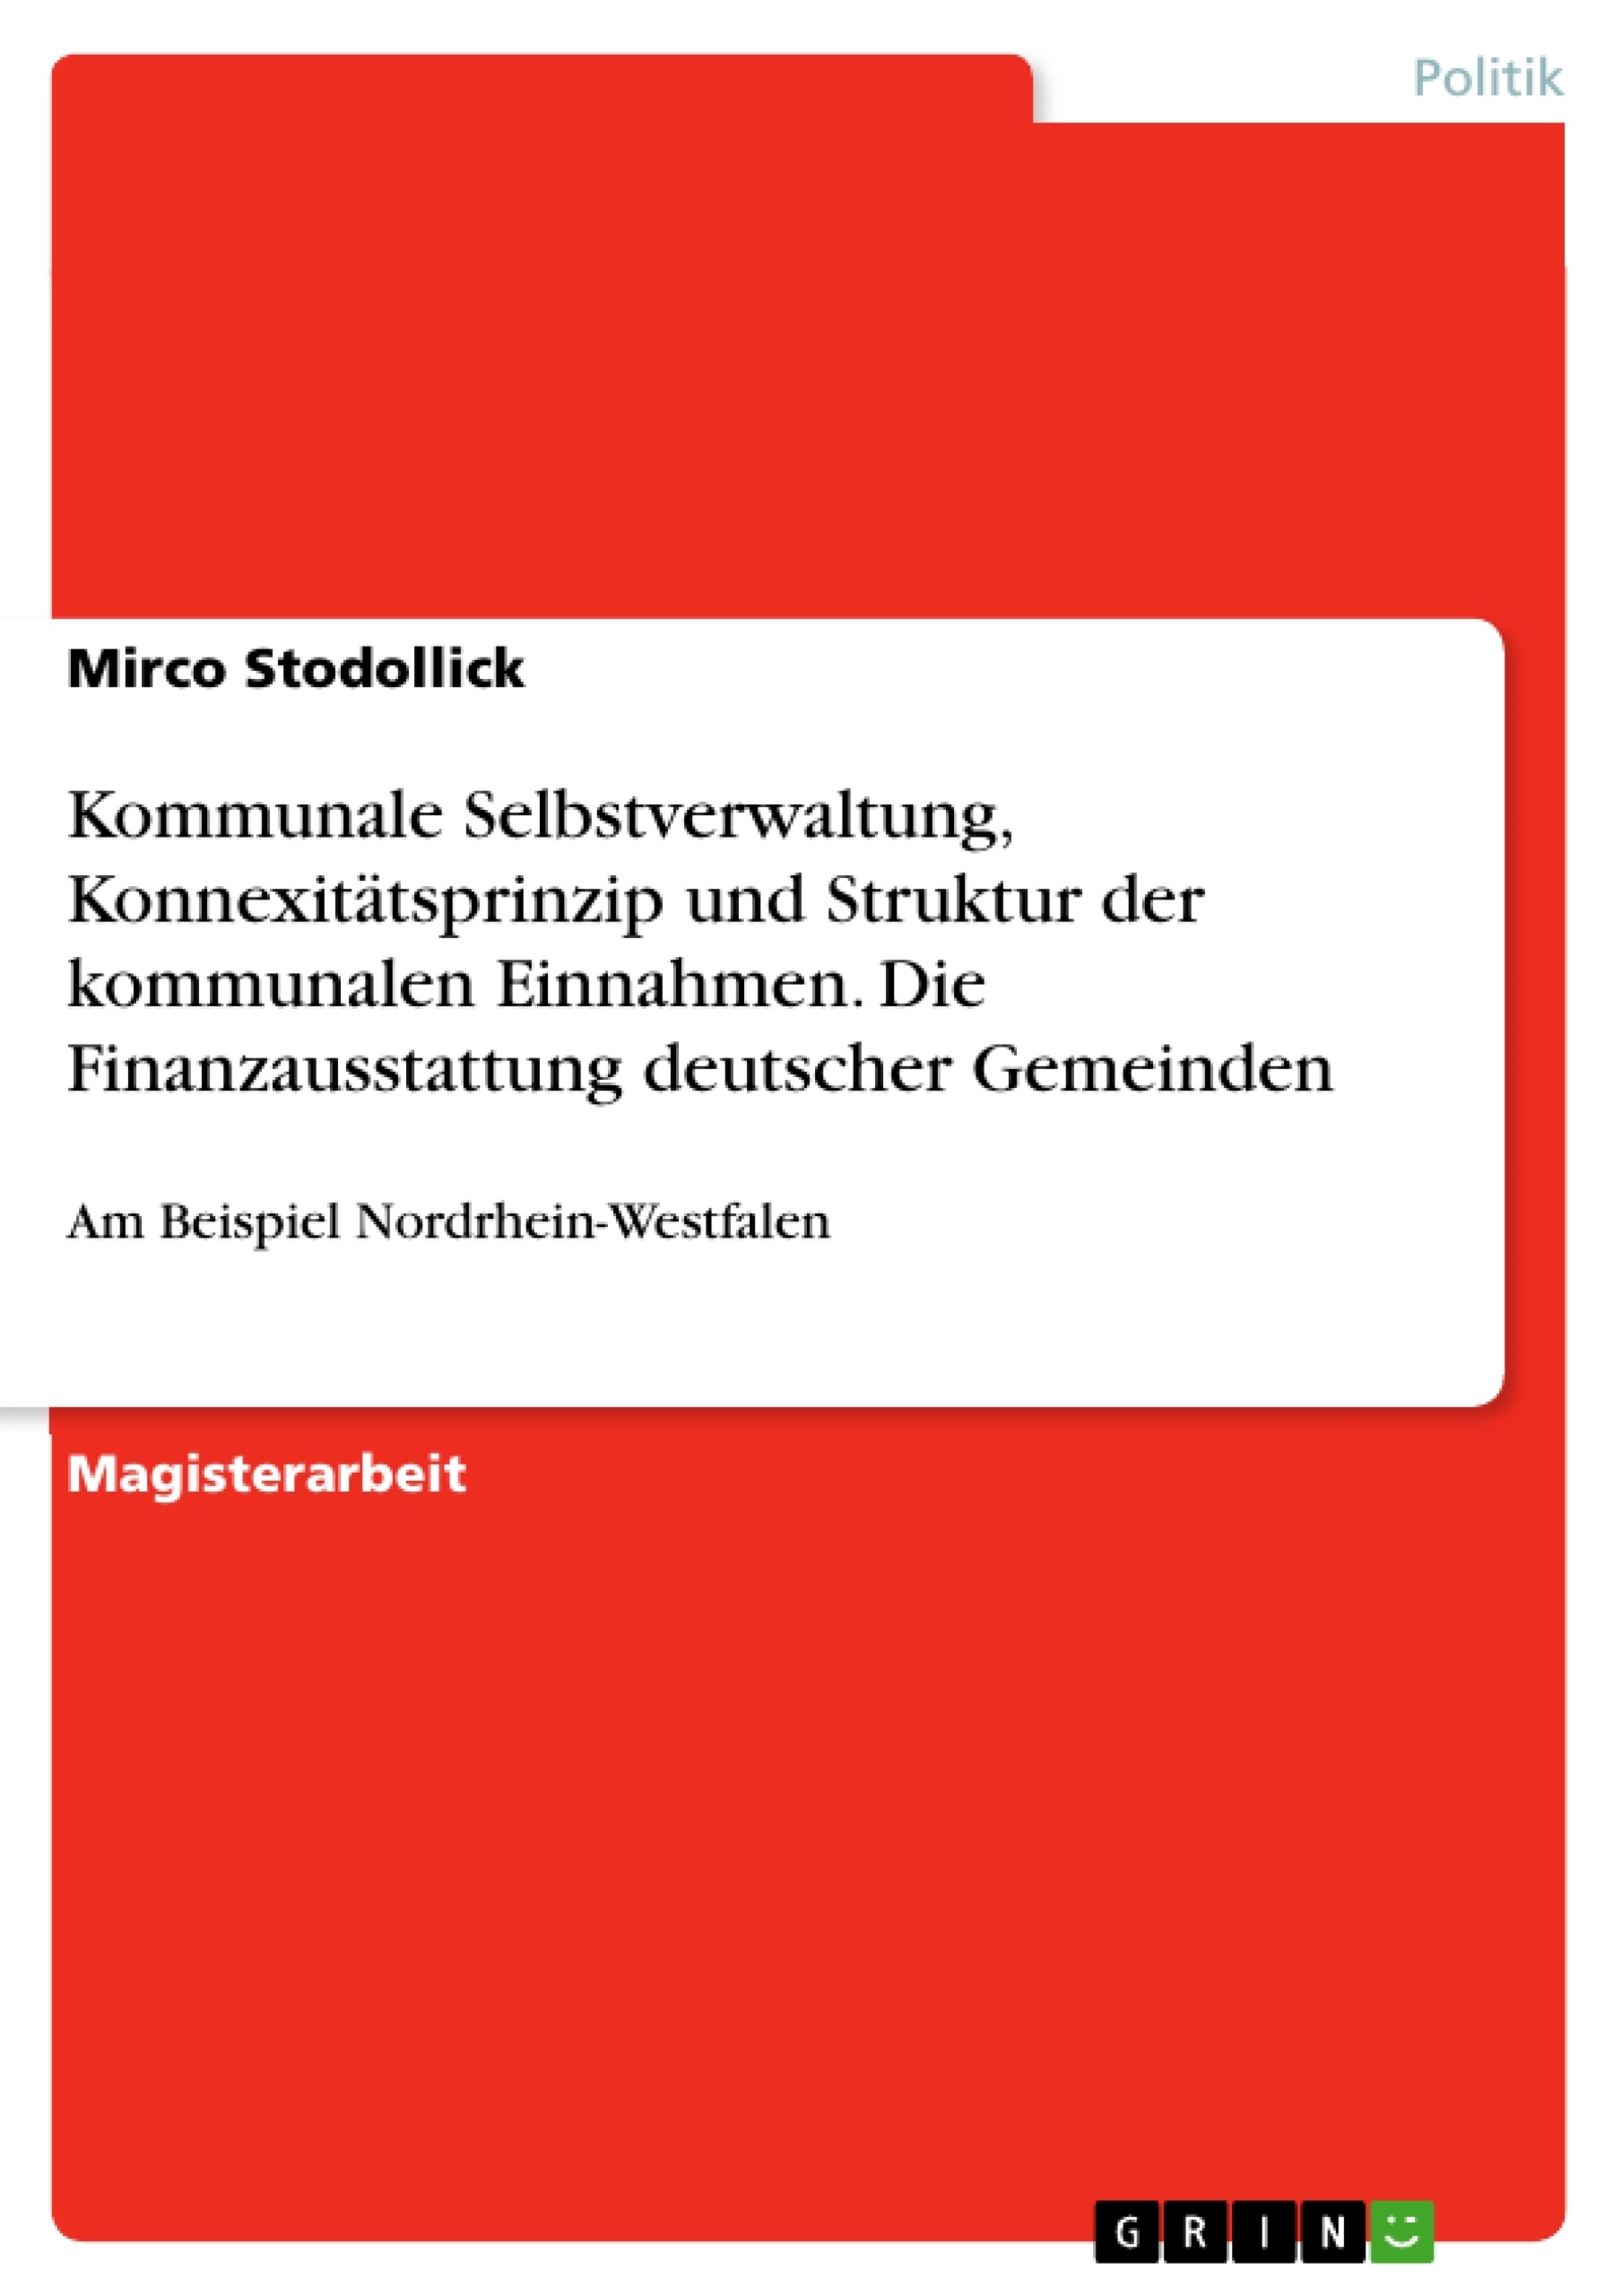 Título: Kommunale Selbstverwaltung, Konnexitätsprinzip und Struktur der kommunalen Einnahmen. Die Finanzausstattung deutscher Gemeinden